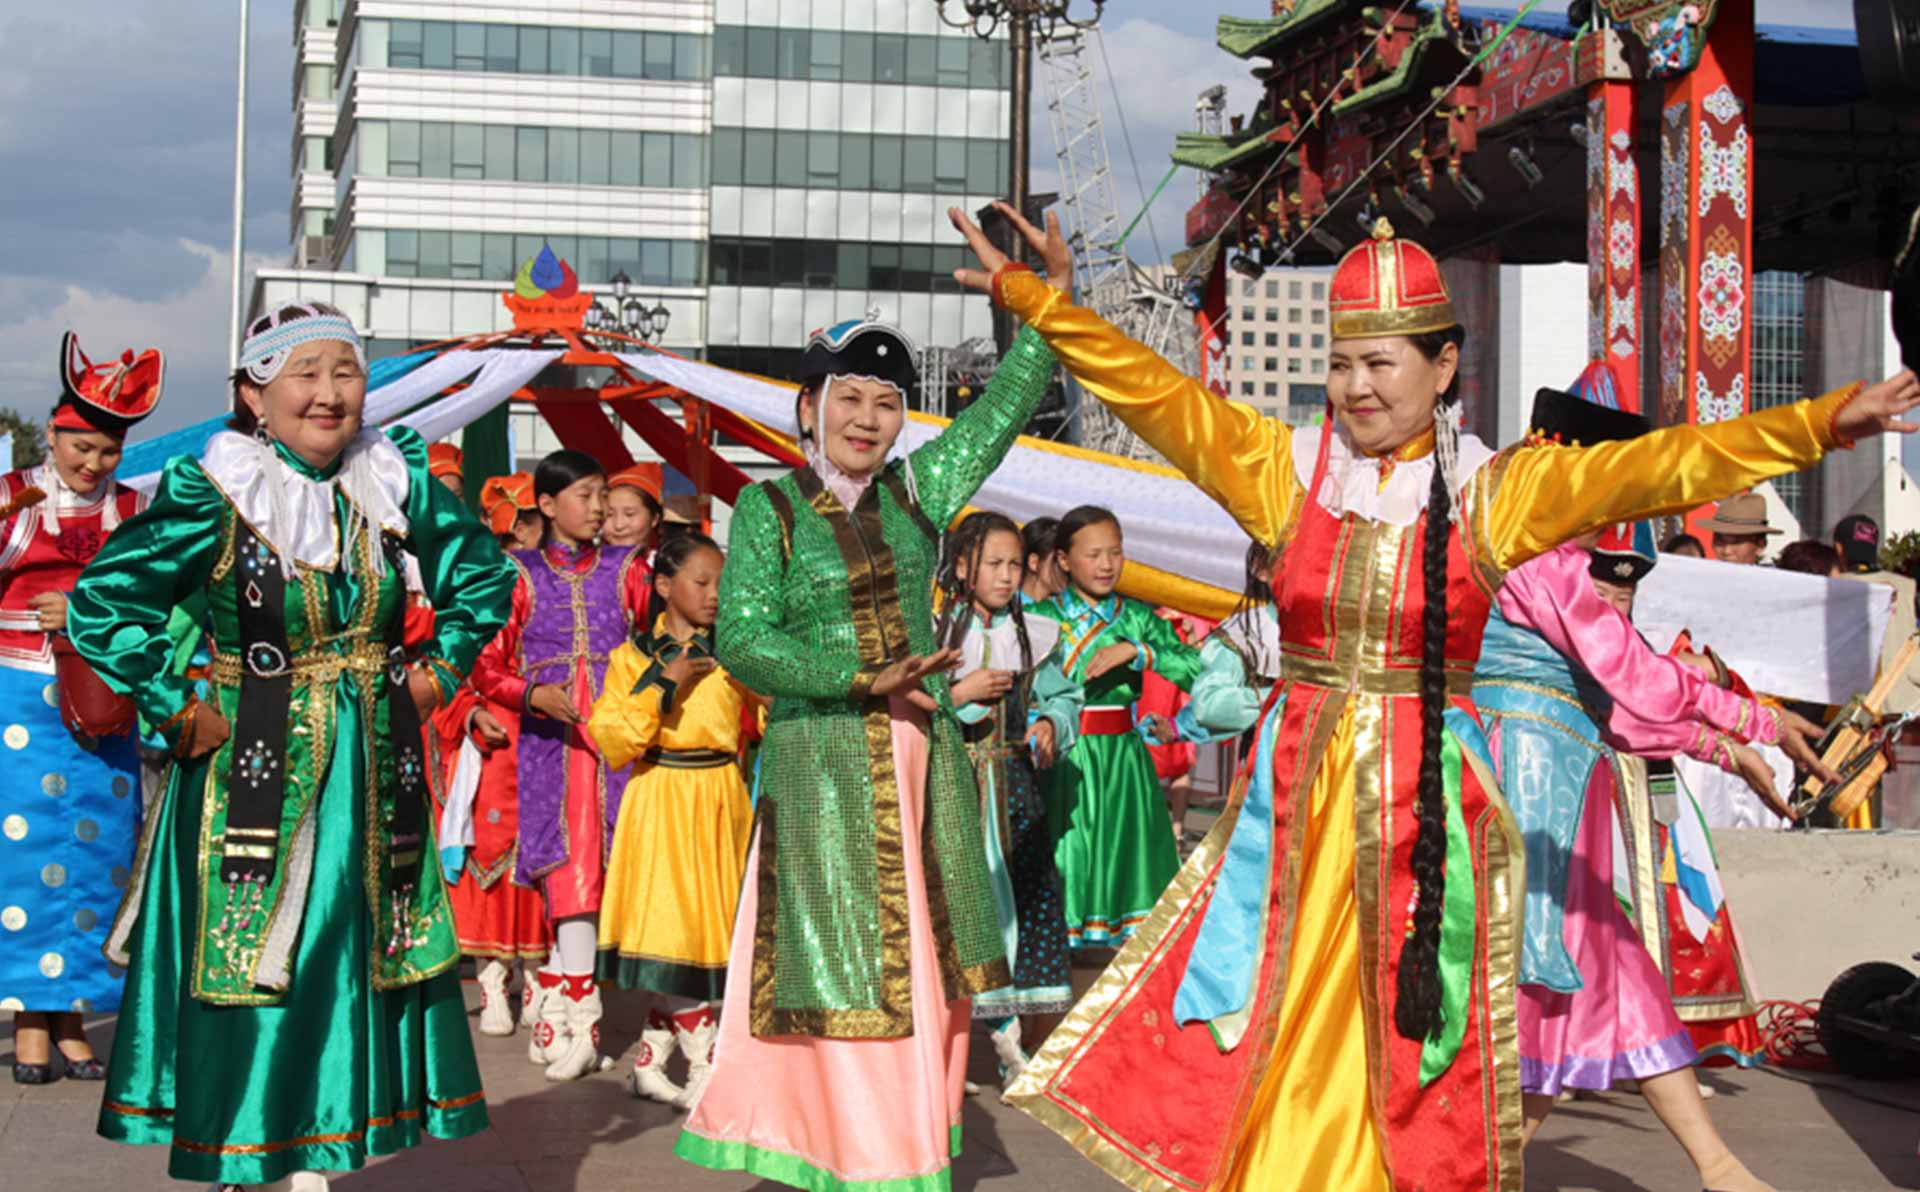 Mongolian women in traditional clothing